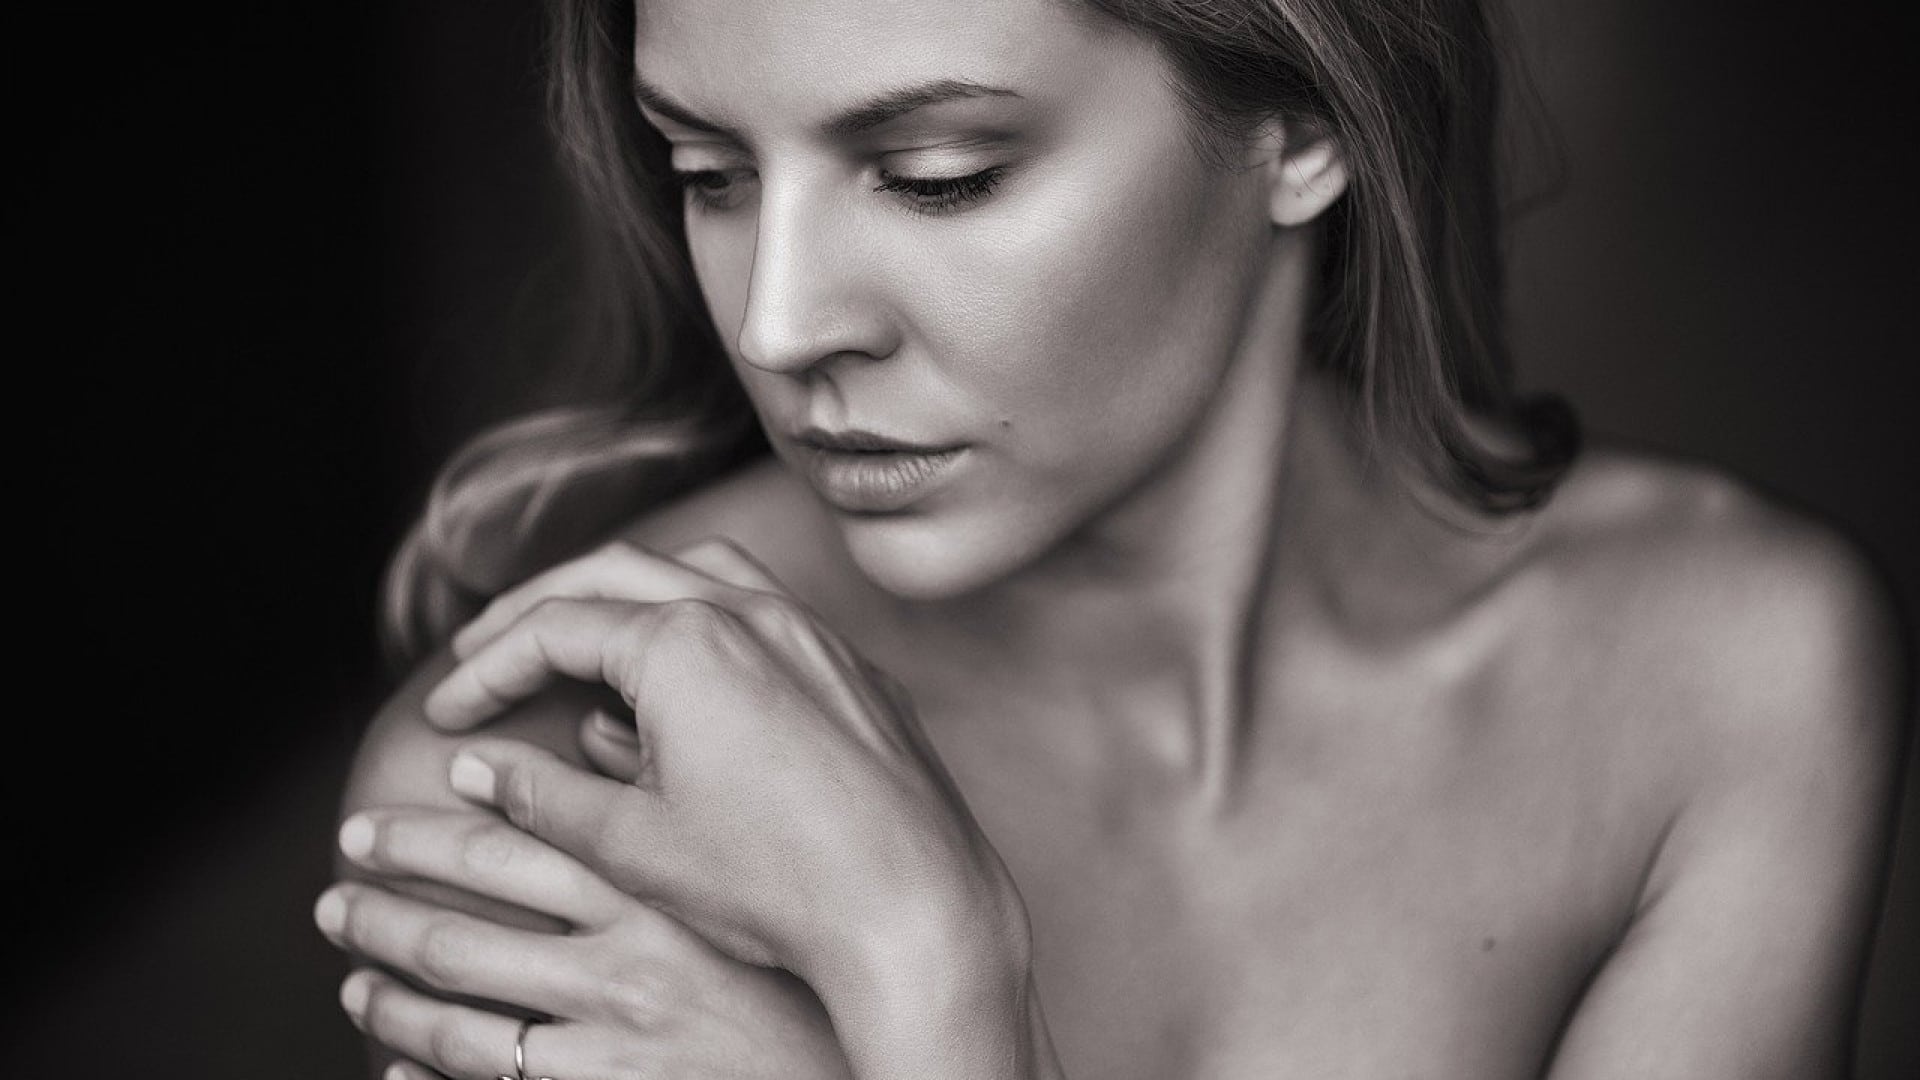 Une femme contemplative, après quarante ans, dans un portrait en noir et blanc, le regard baissé et les mains doucement effleurées.